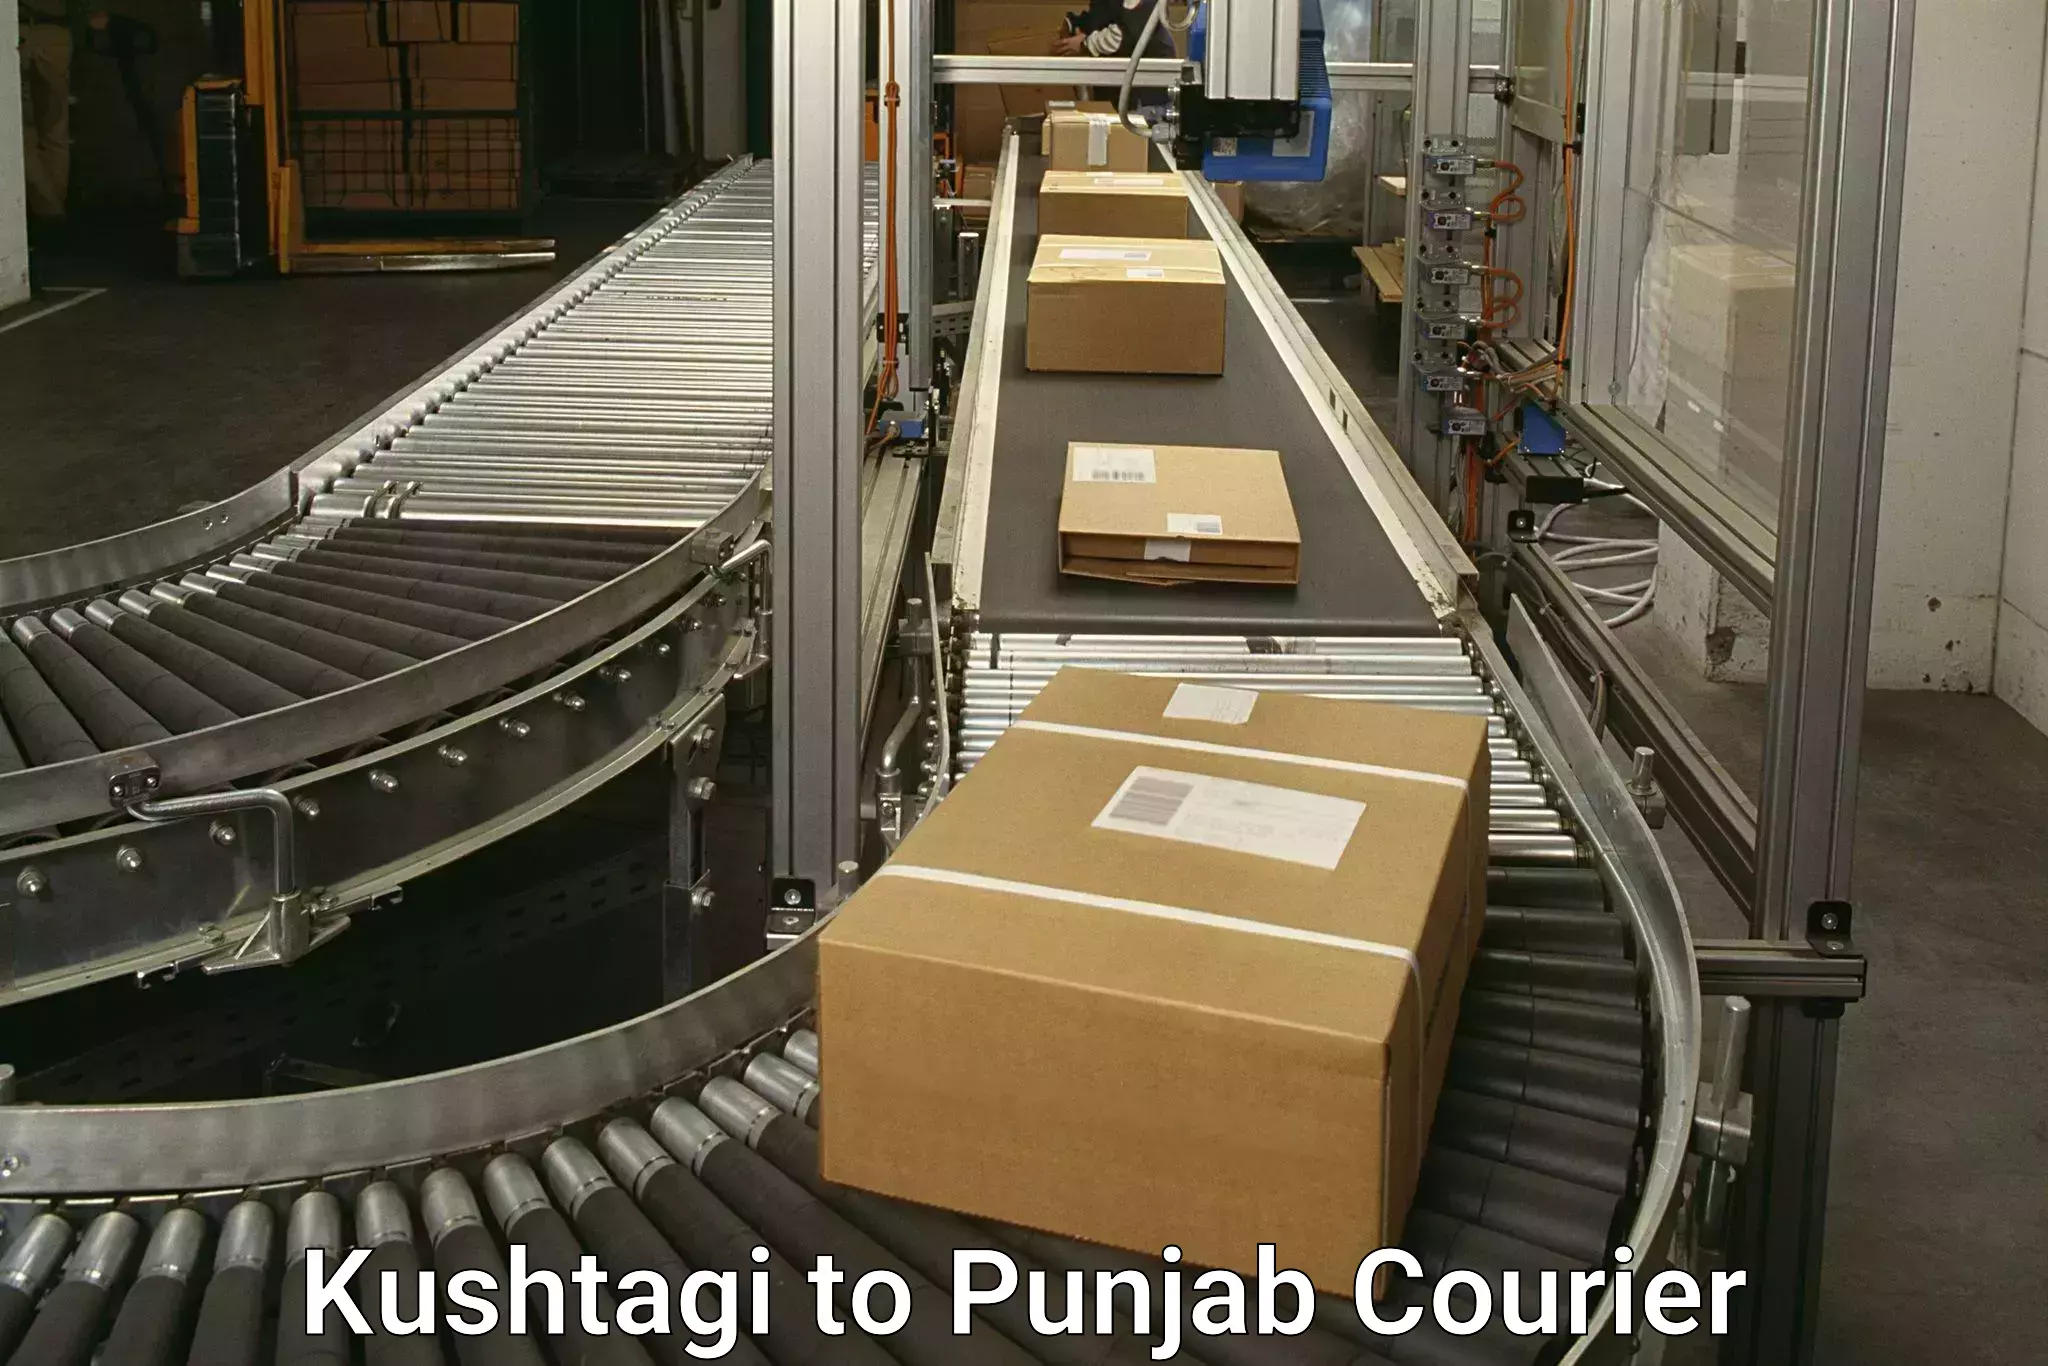 Doorstep delivery service Kushtagi to Amritsar